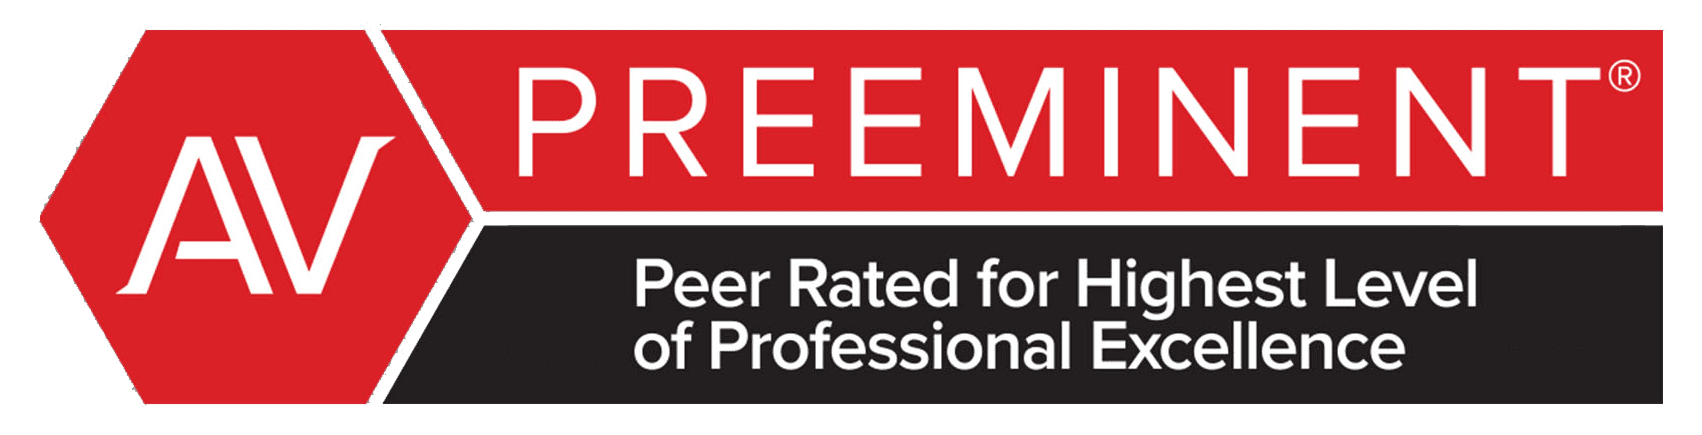 AV Preeminent | Peer Rated For Highest Level of Professional Excellence